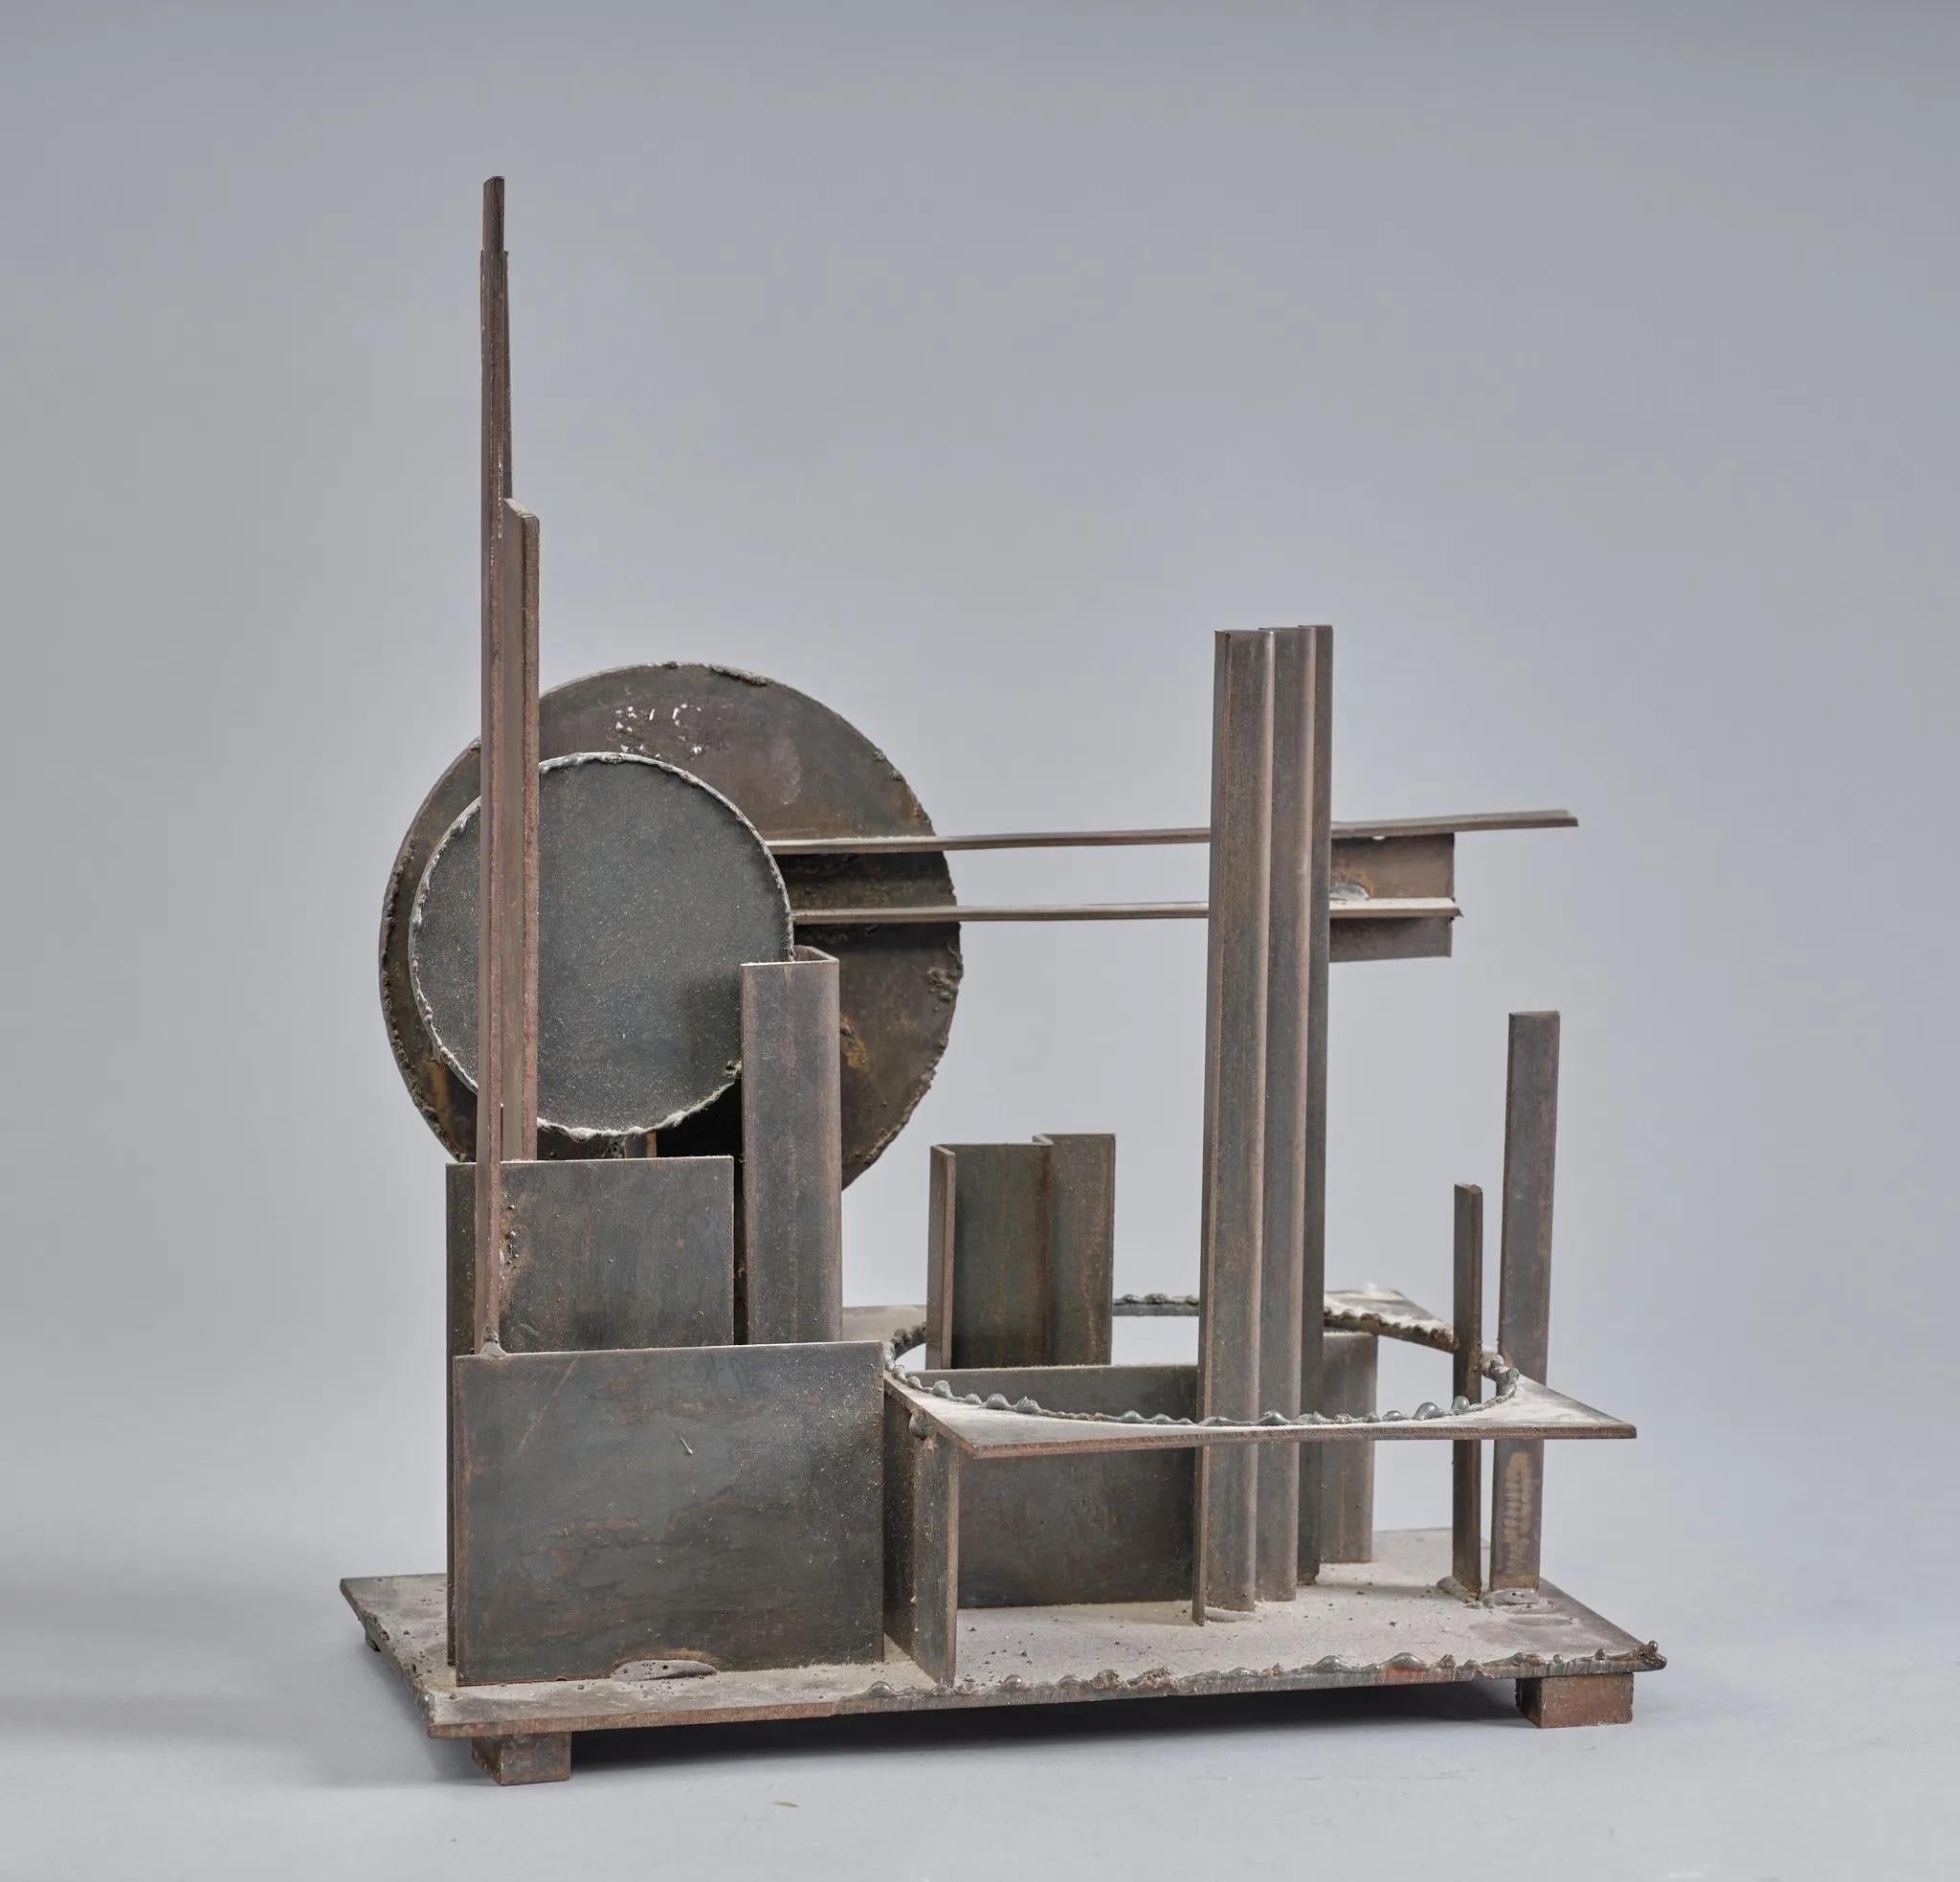 Marcel Ramond (1935-) Sculpture géométrique en métal, vers 1970

Fer soudé 

Signé sous la base

Un certificat sera fourni à l'acheteur 

Longueur 44 x Hauteur 38 x Profondeur 18 cm